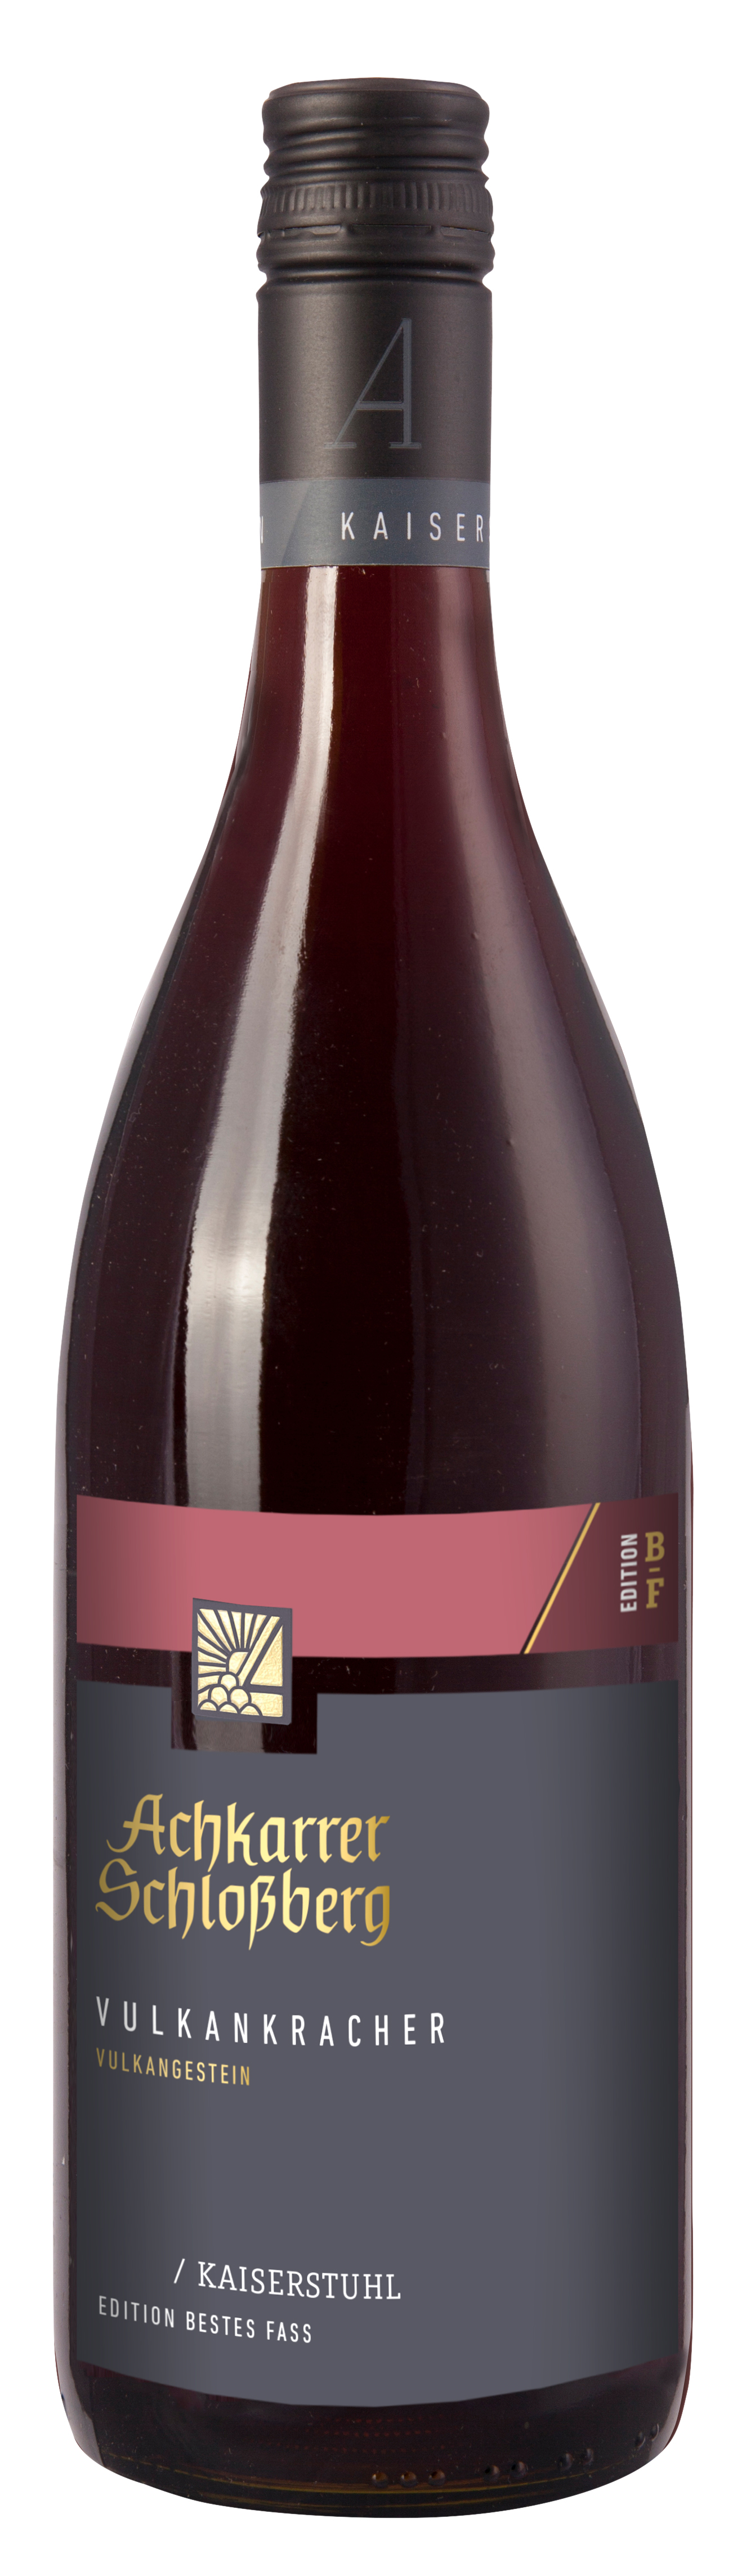 Achkarrer Schlossberg  - BESTES FASS - Vulkankracher Rotwein Cuvée Qualitätswein